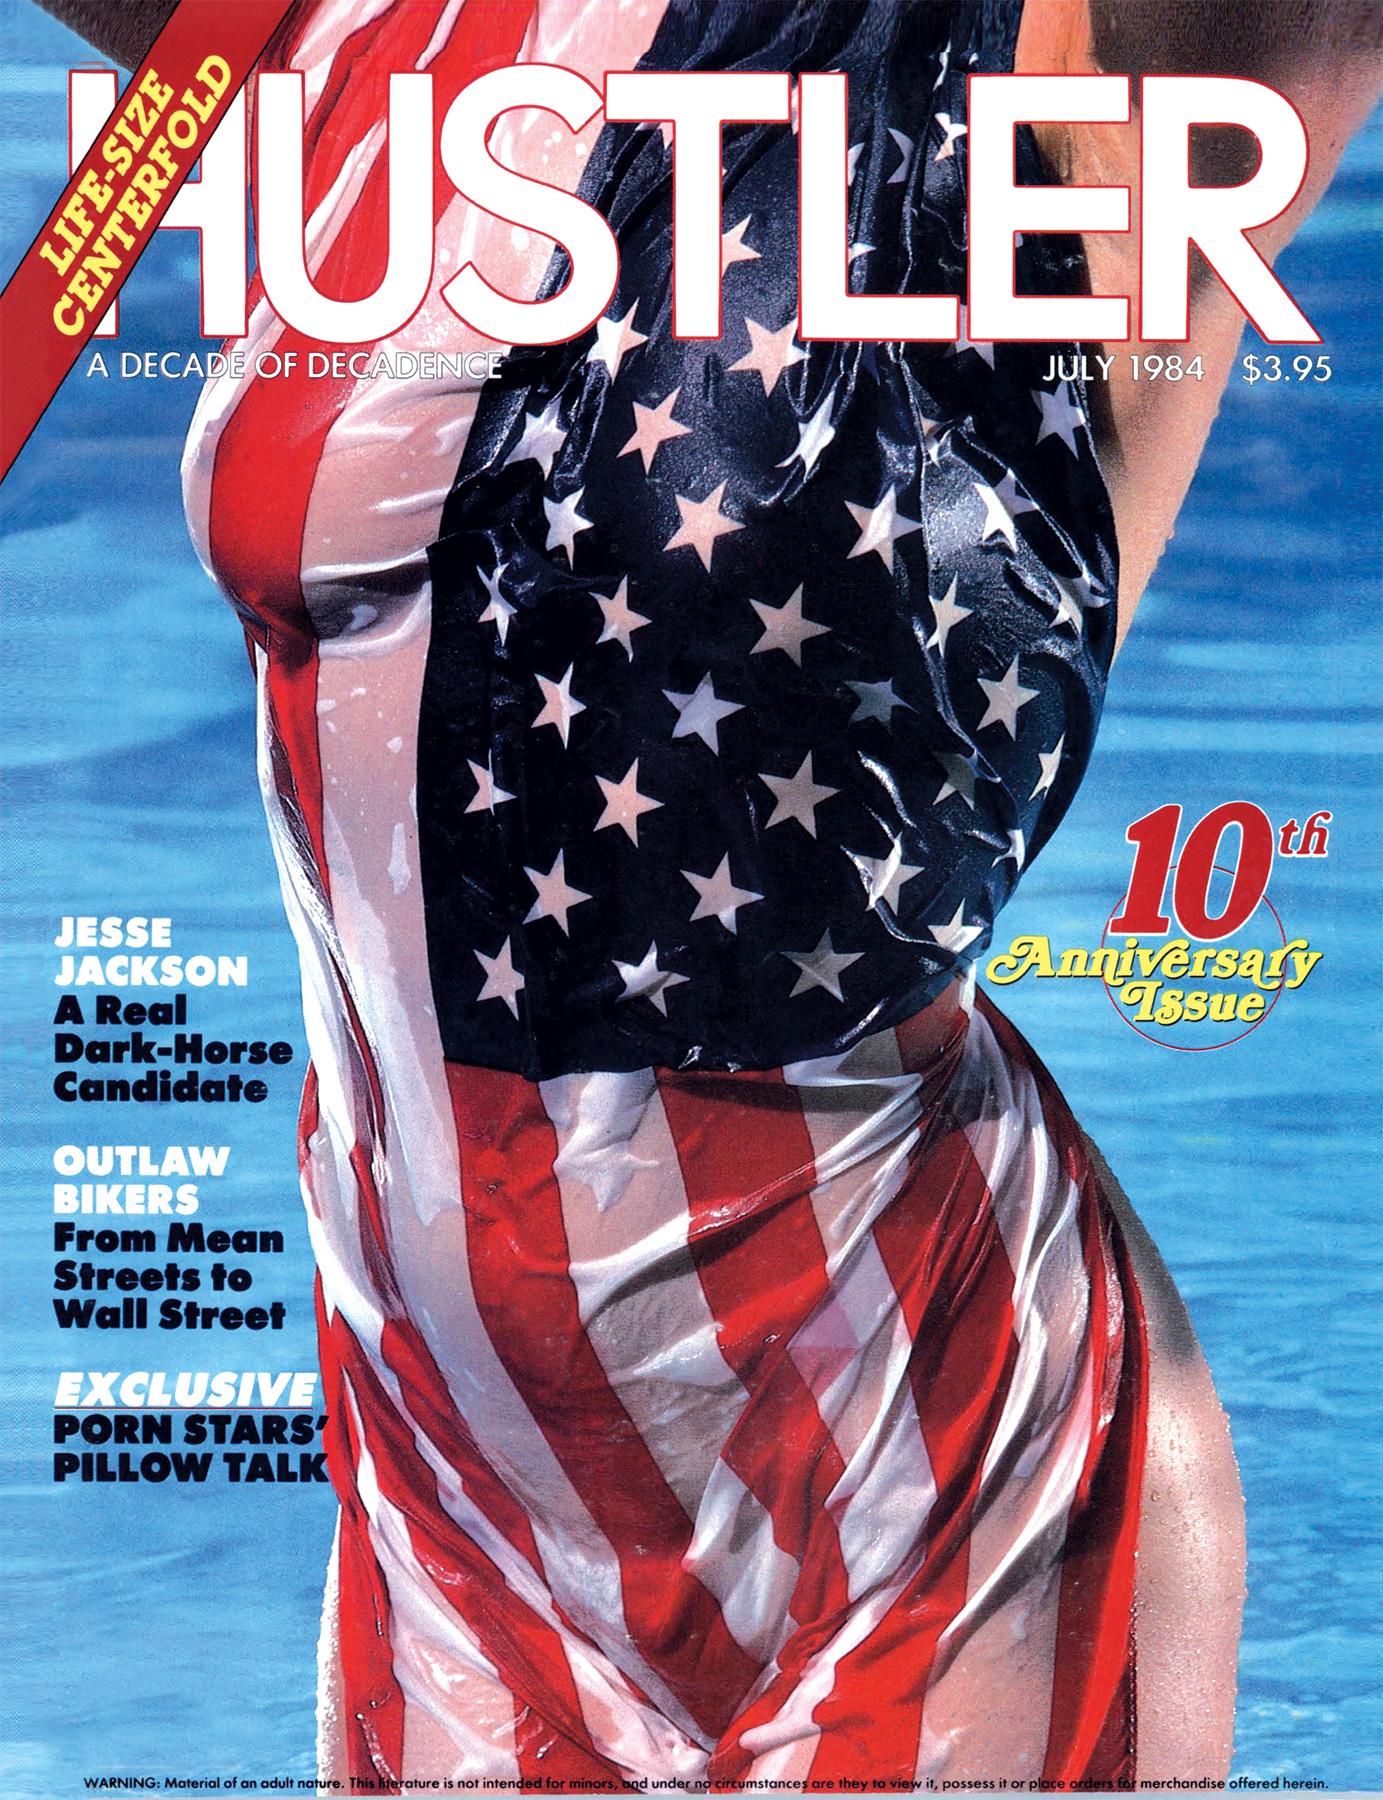 HUSTLER July 1984 Cover.